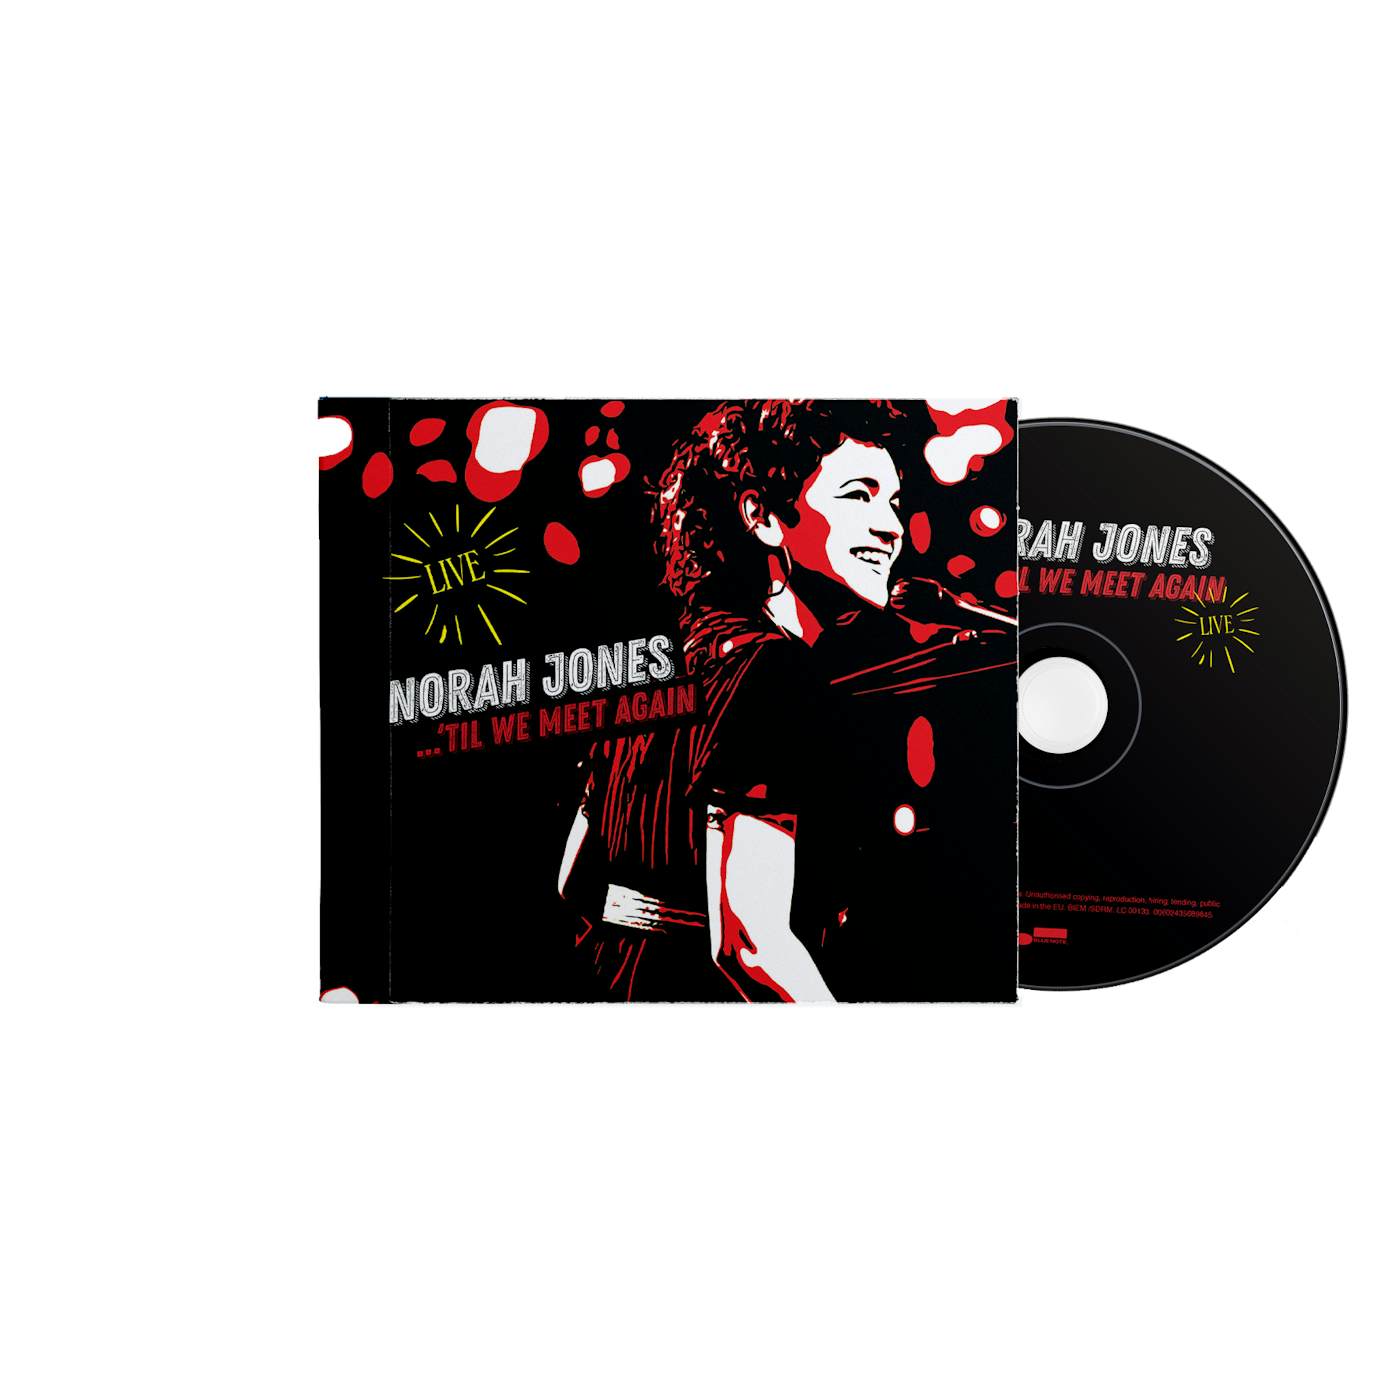 Norah Jones 'Til We Meet Again CD